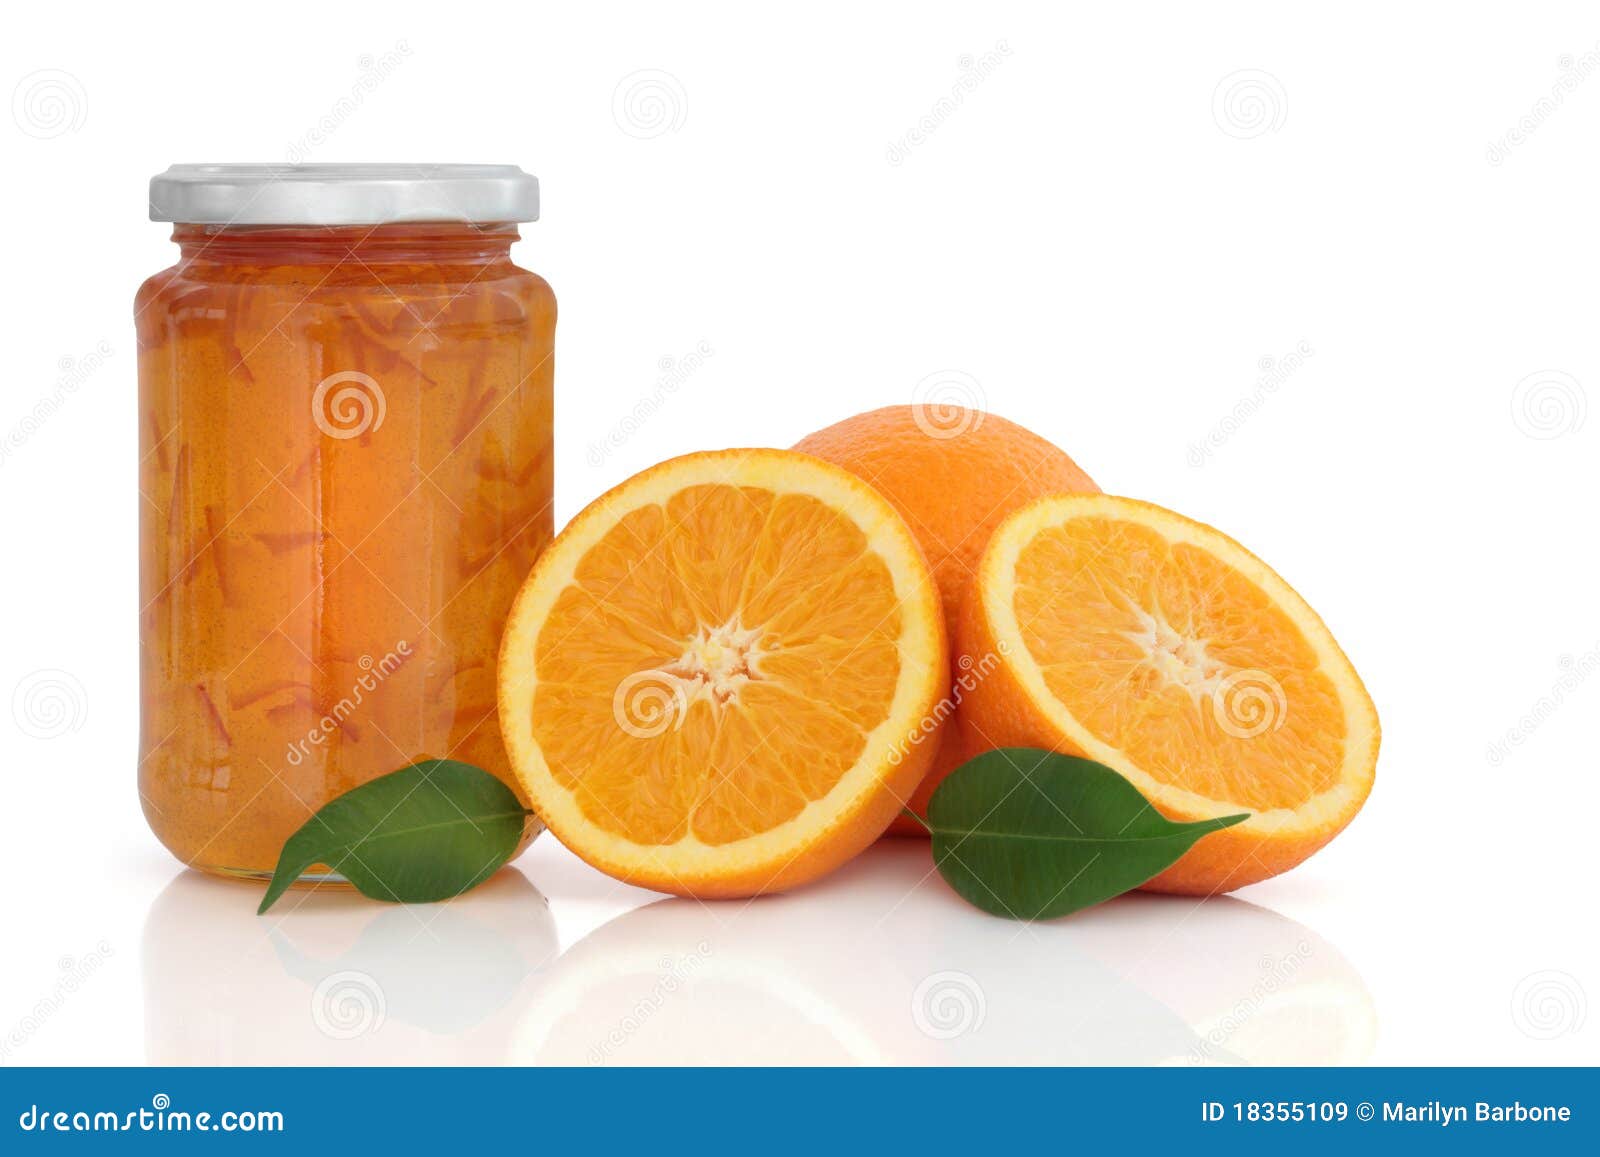 marmalade jam